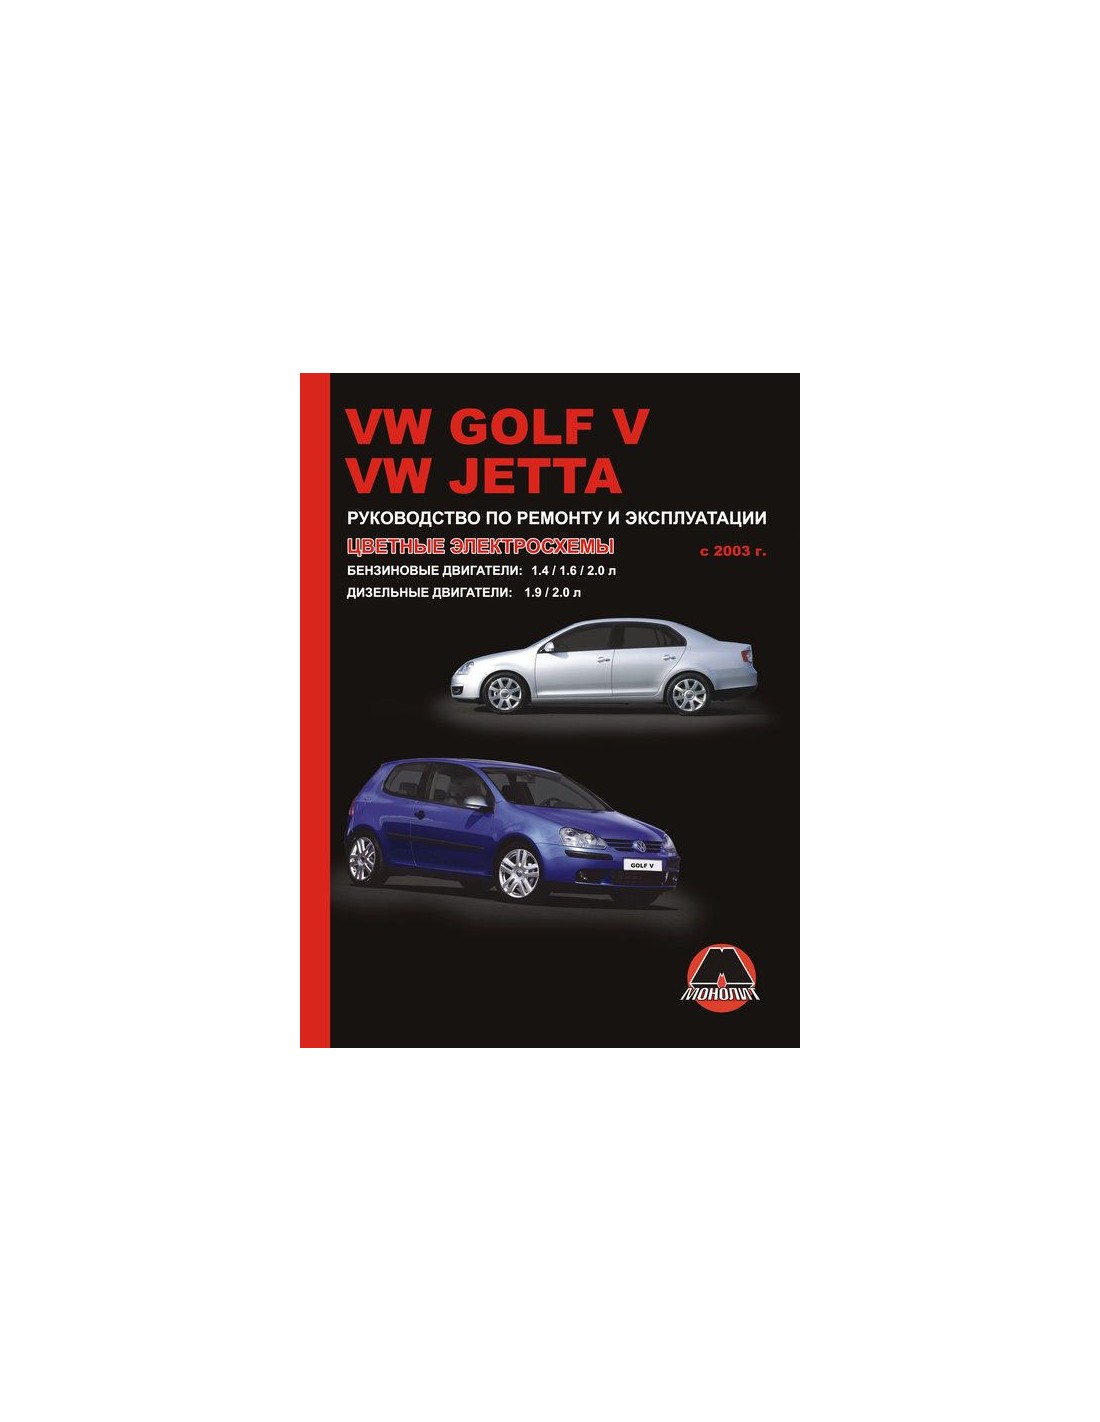 Книга по ремонту Фольксваген Джетта 6. Книга Фольксваген гольф 5. Руководство по ремонту Volkswagen Jetta. Джетта 6 книга по ремонту.